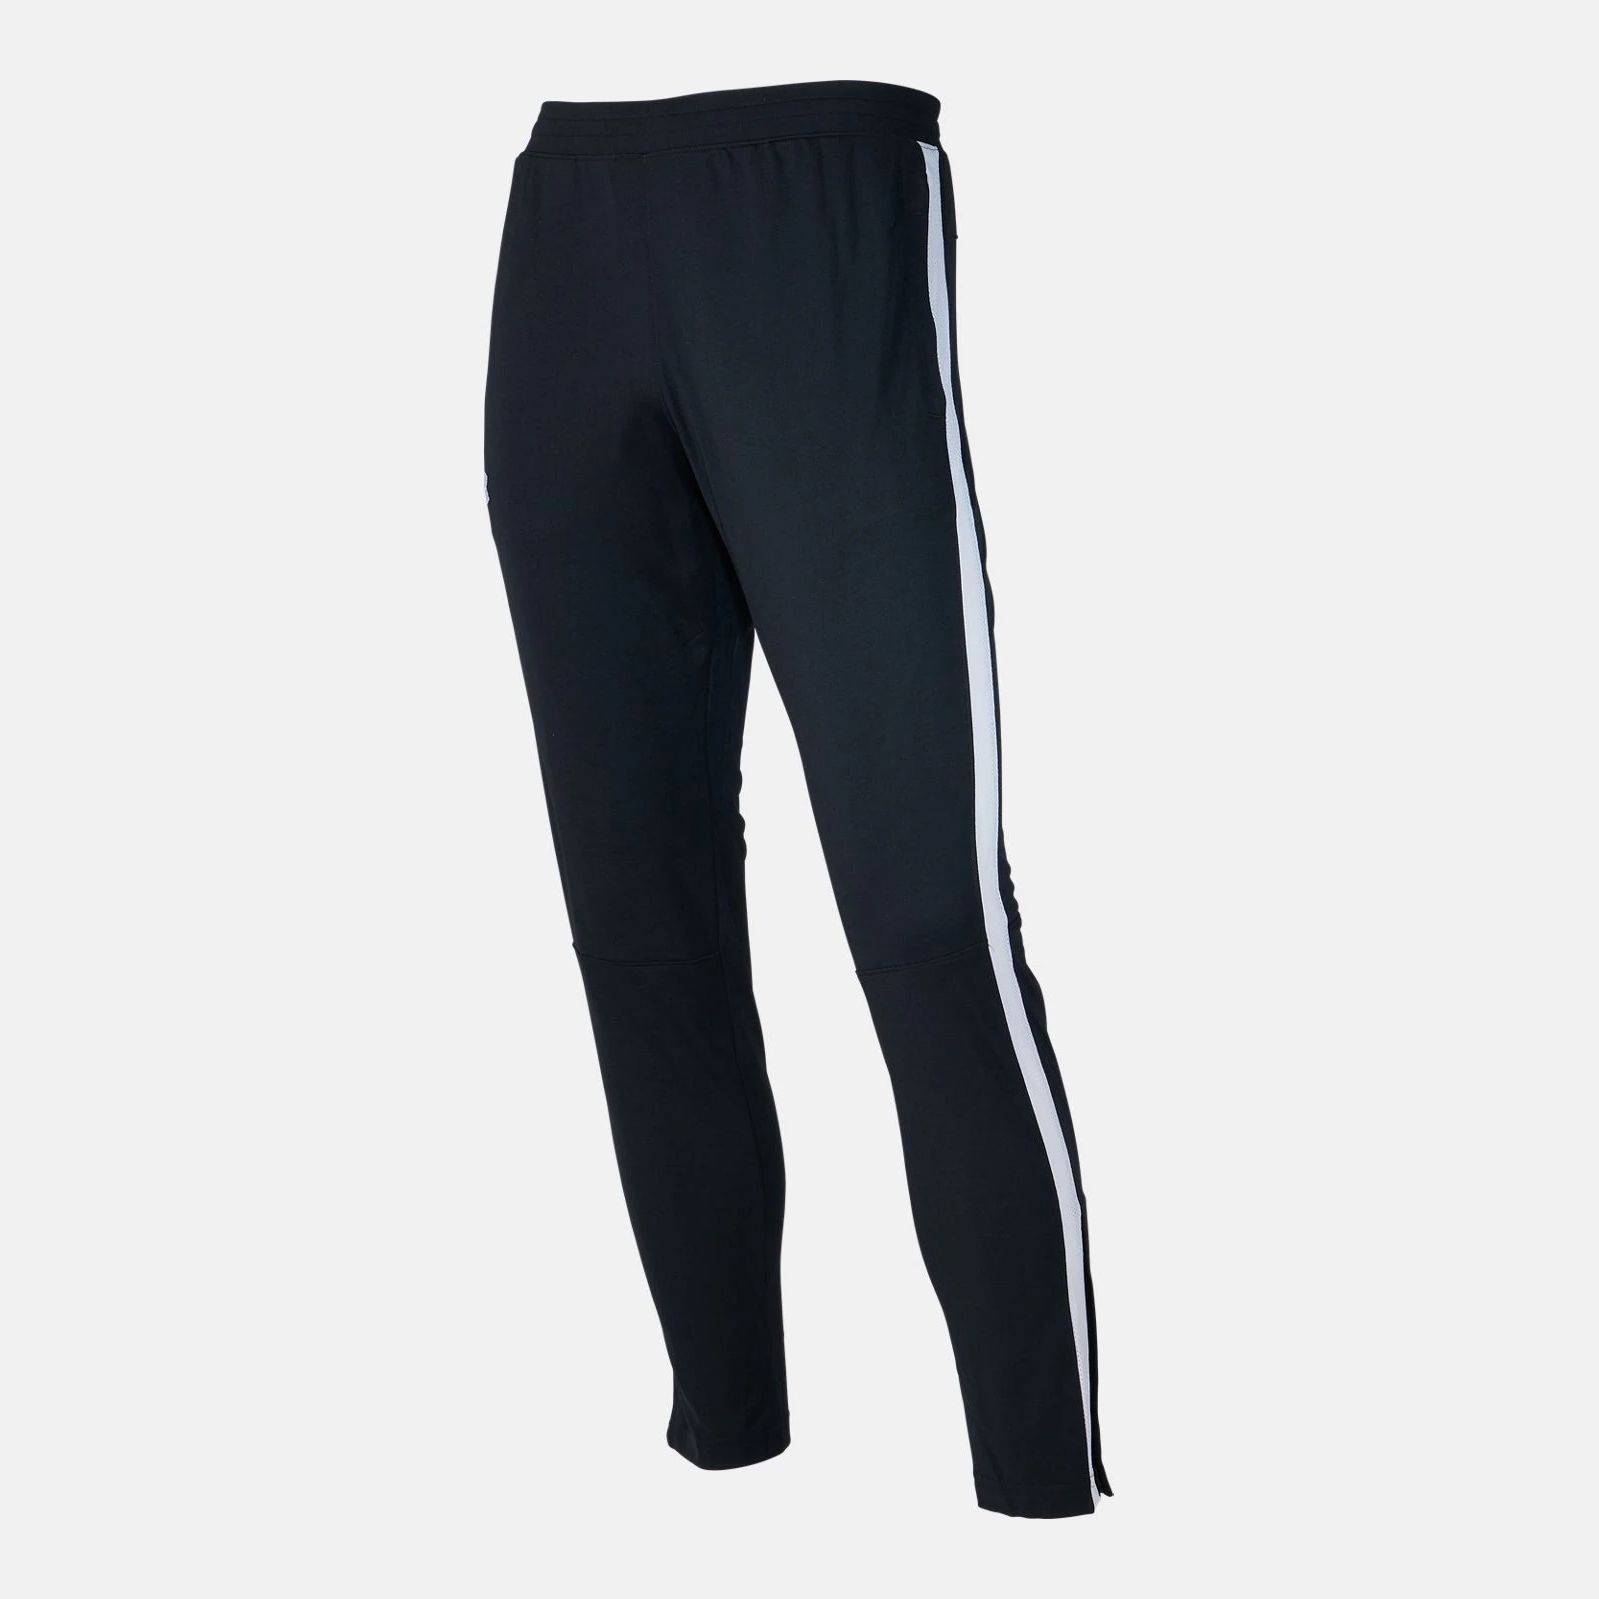 Joggers & Sweatpants -  under armour Sportstyle Pique Pants 3201